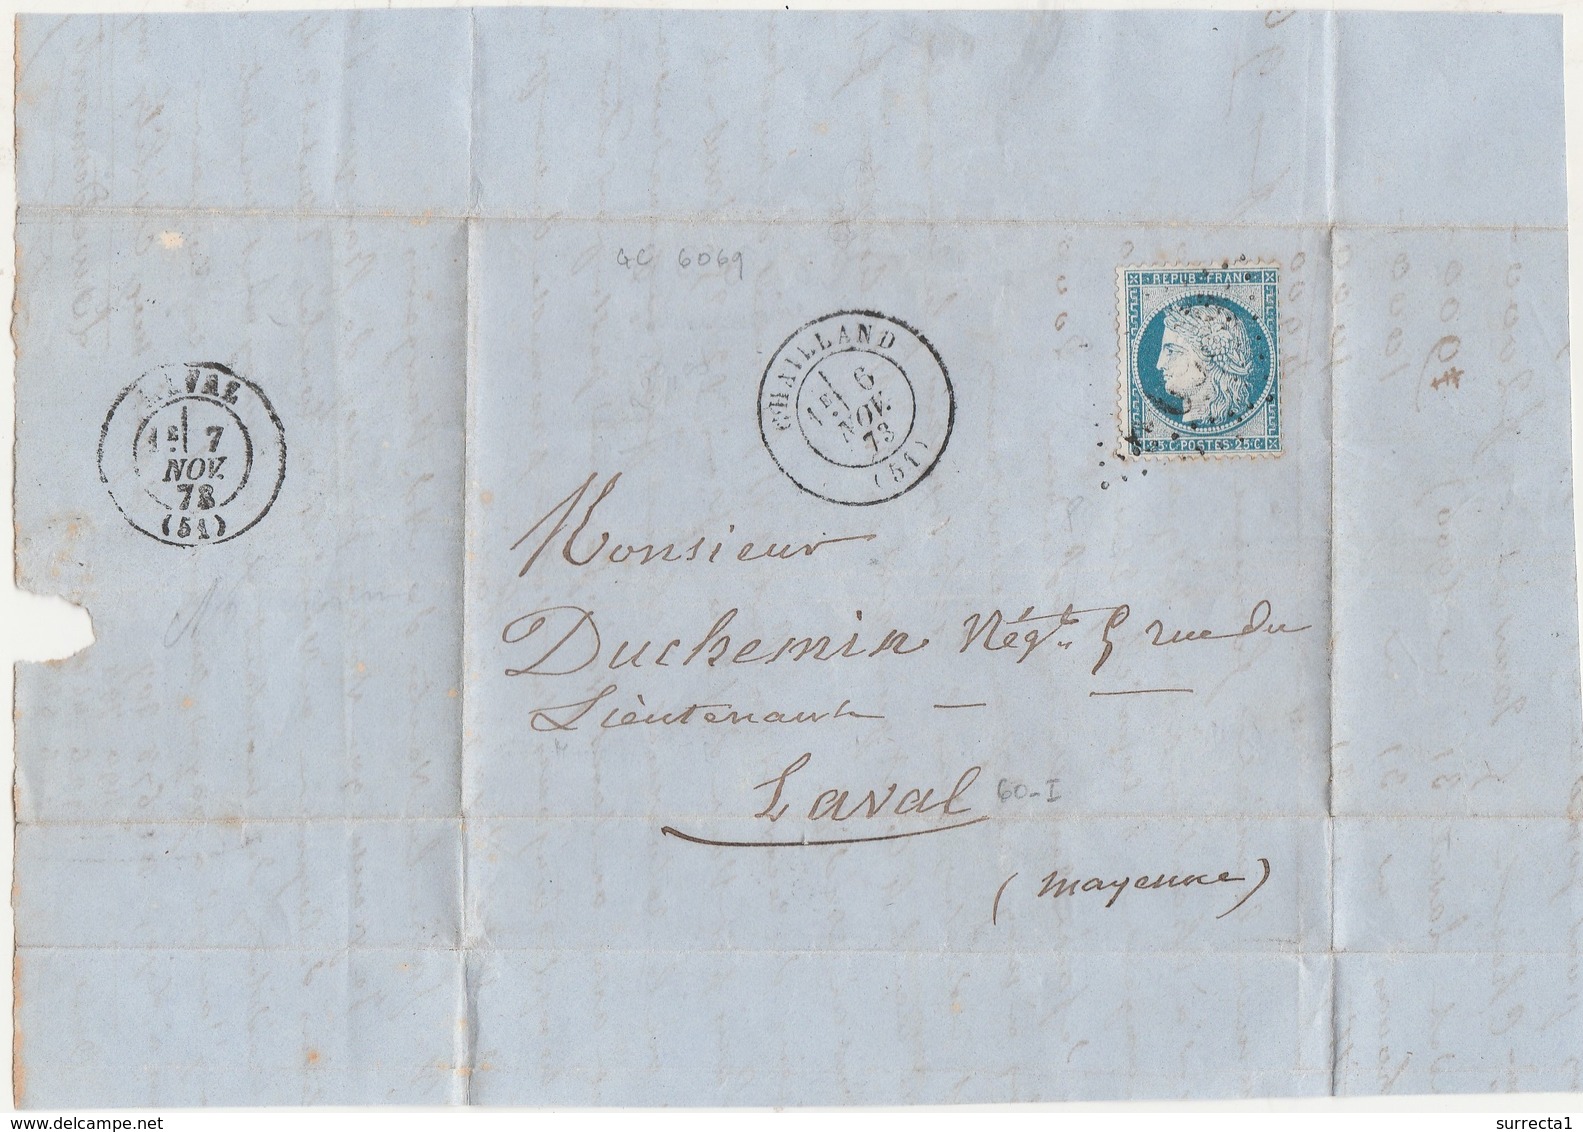 1873 LAC Partielle / Cachet De Chailland + Grille GC 6069 / Levoul Desmont Pour Duchemin Négociant à Laval / 53 Mayenne - 1800 – 1899